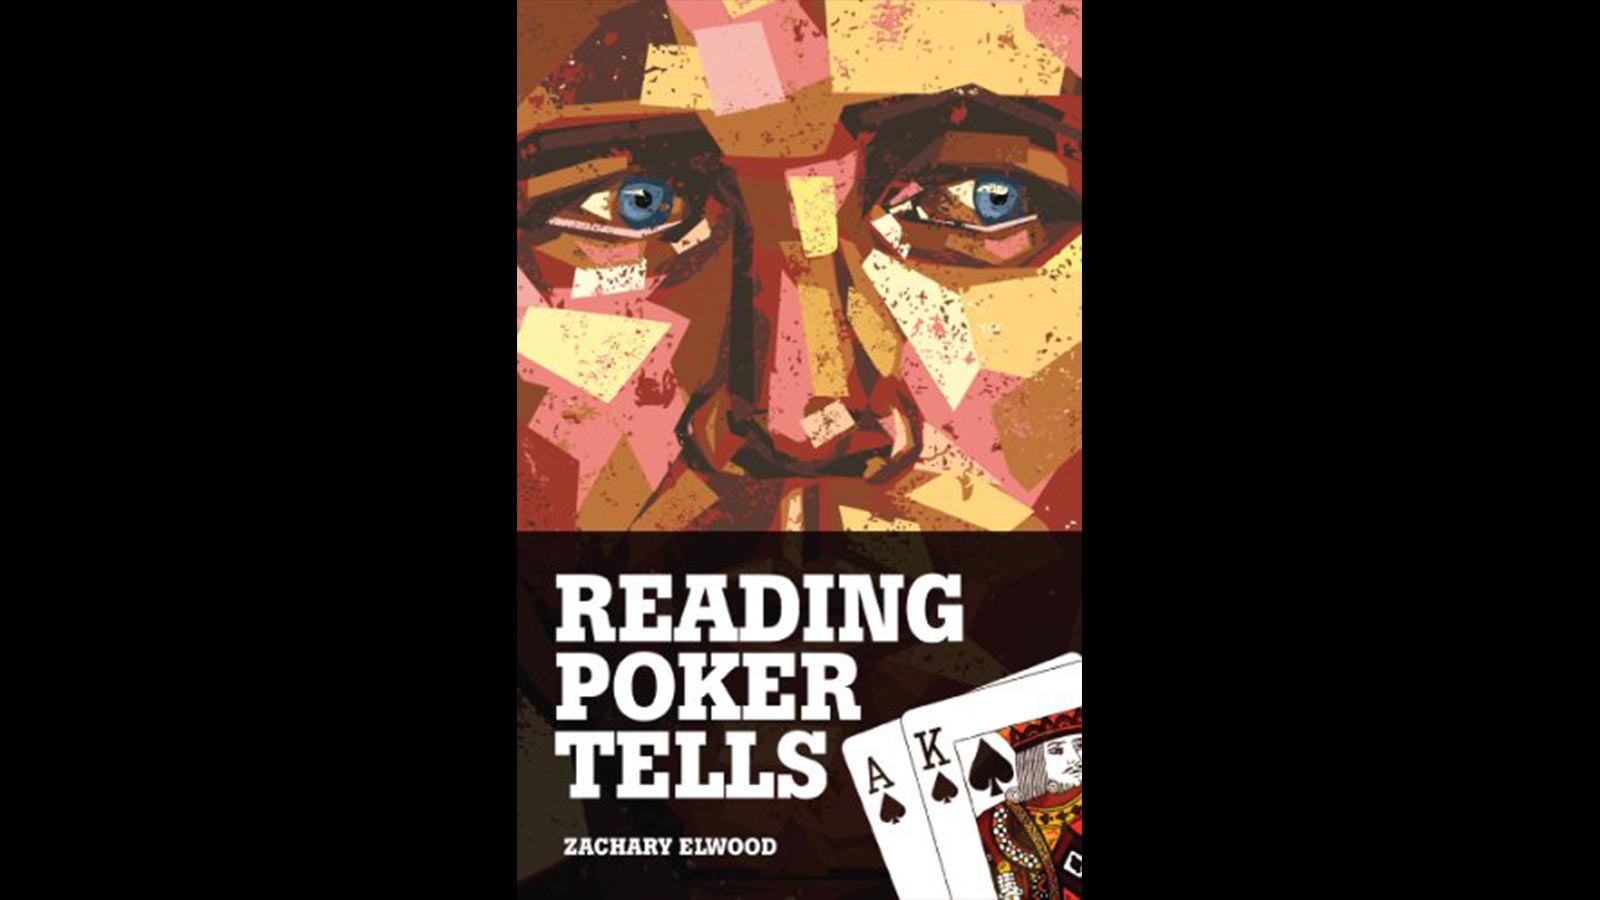 Reading Poker Tells